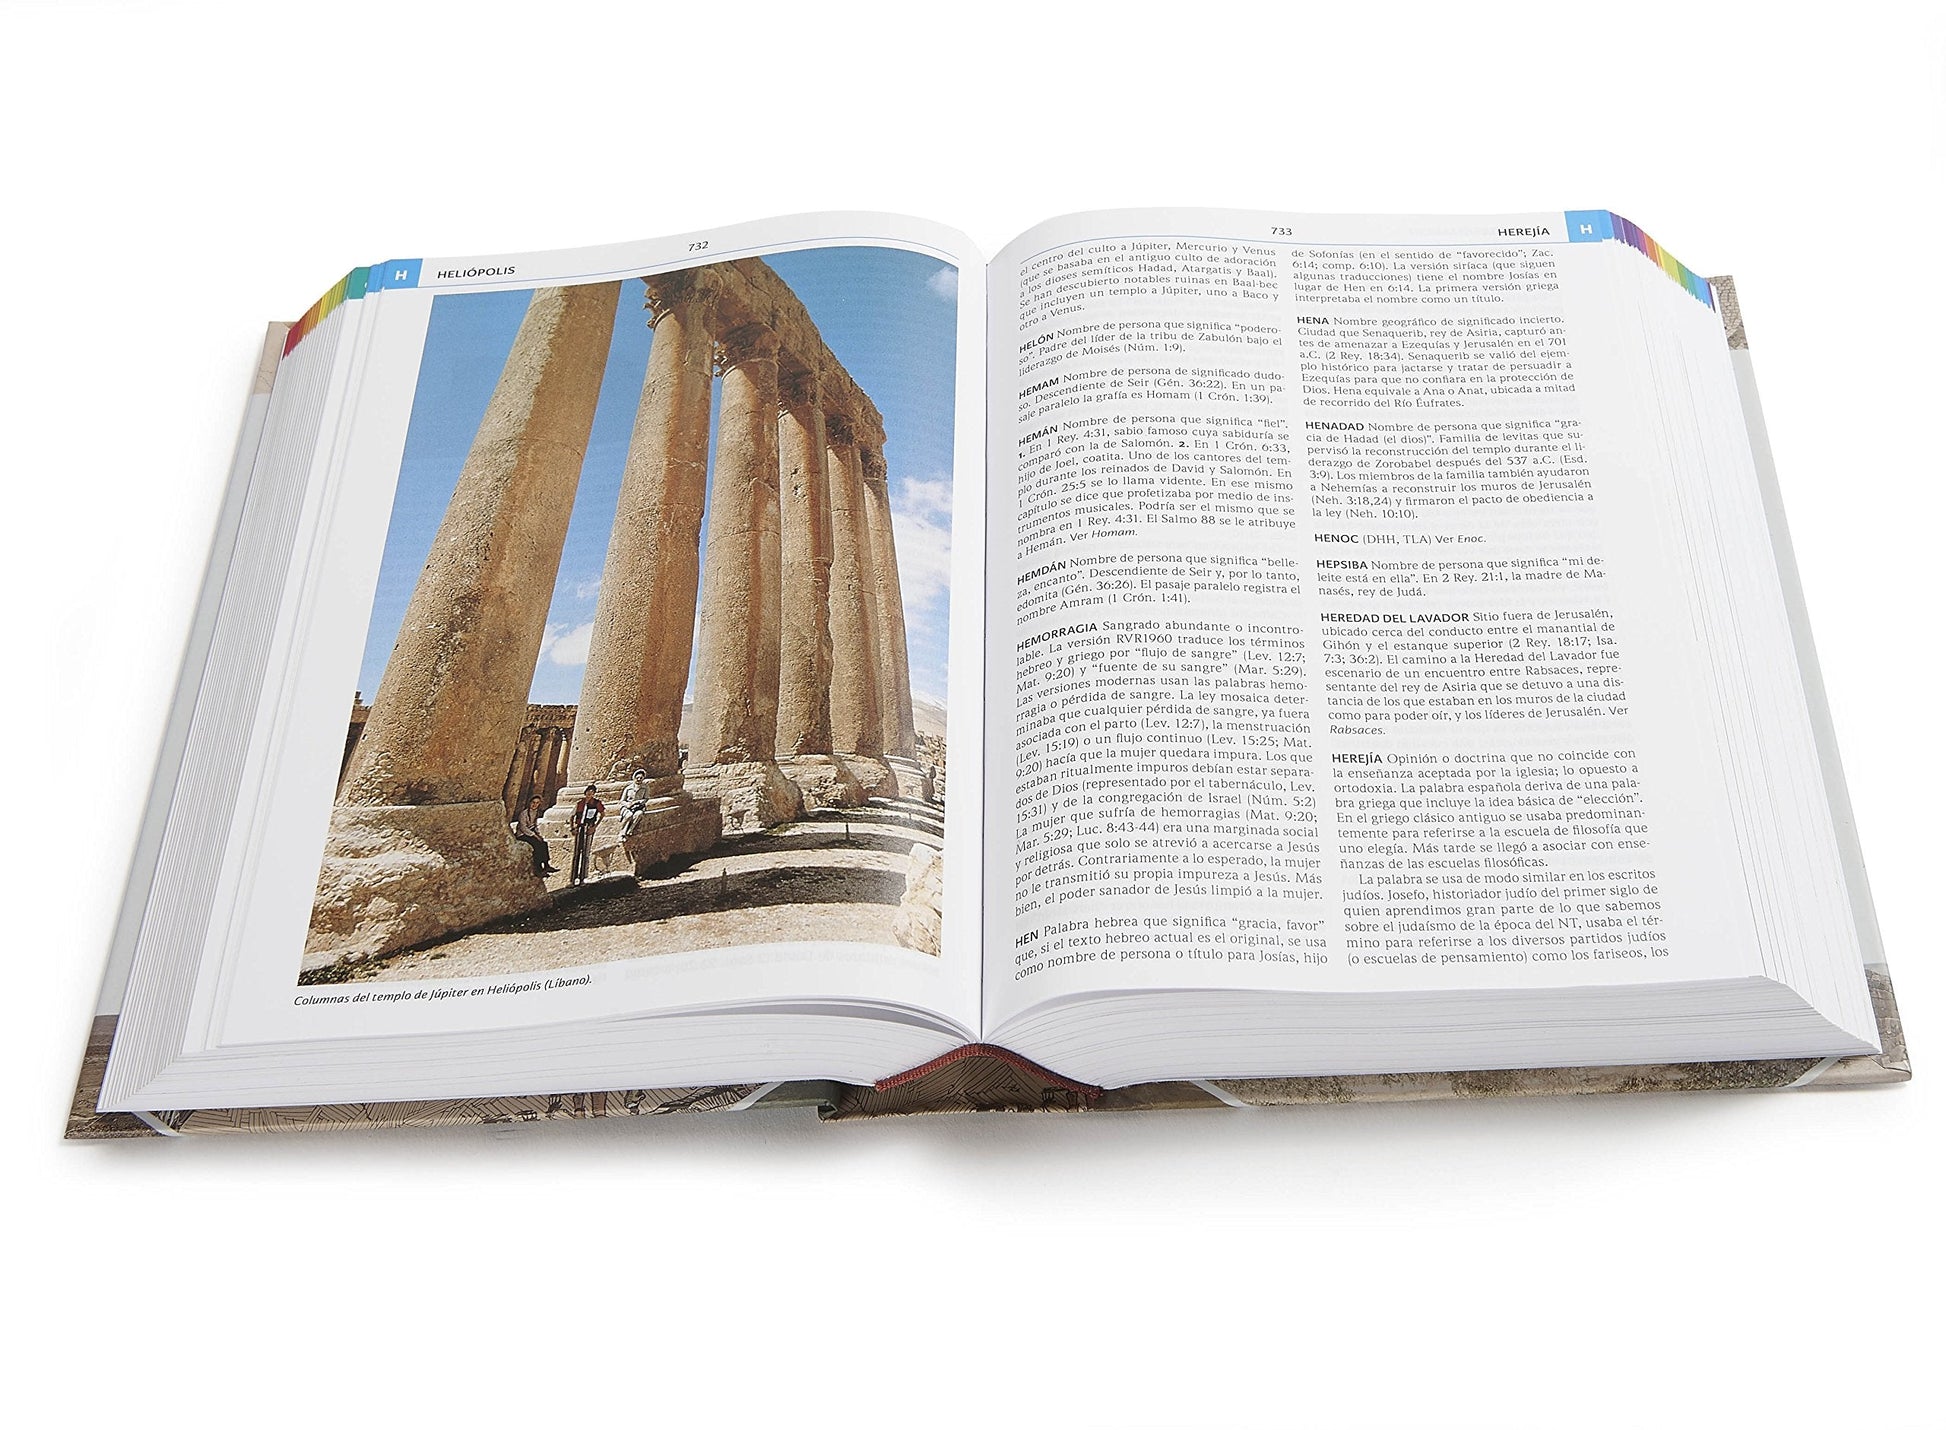 Diccionario Bíblico Ilustrado Holman (nueva edición)